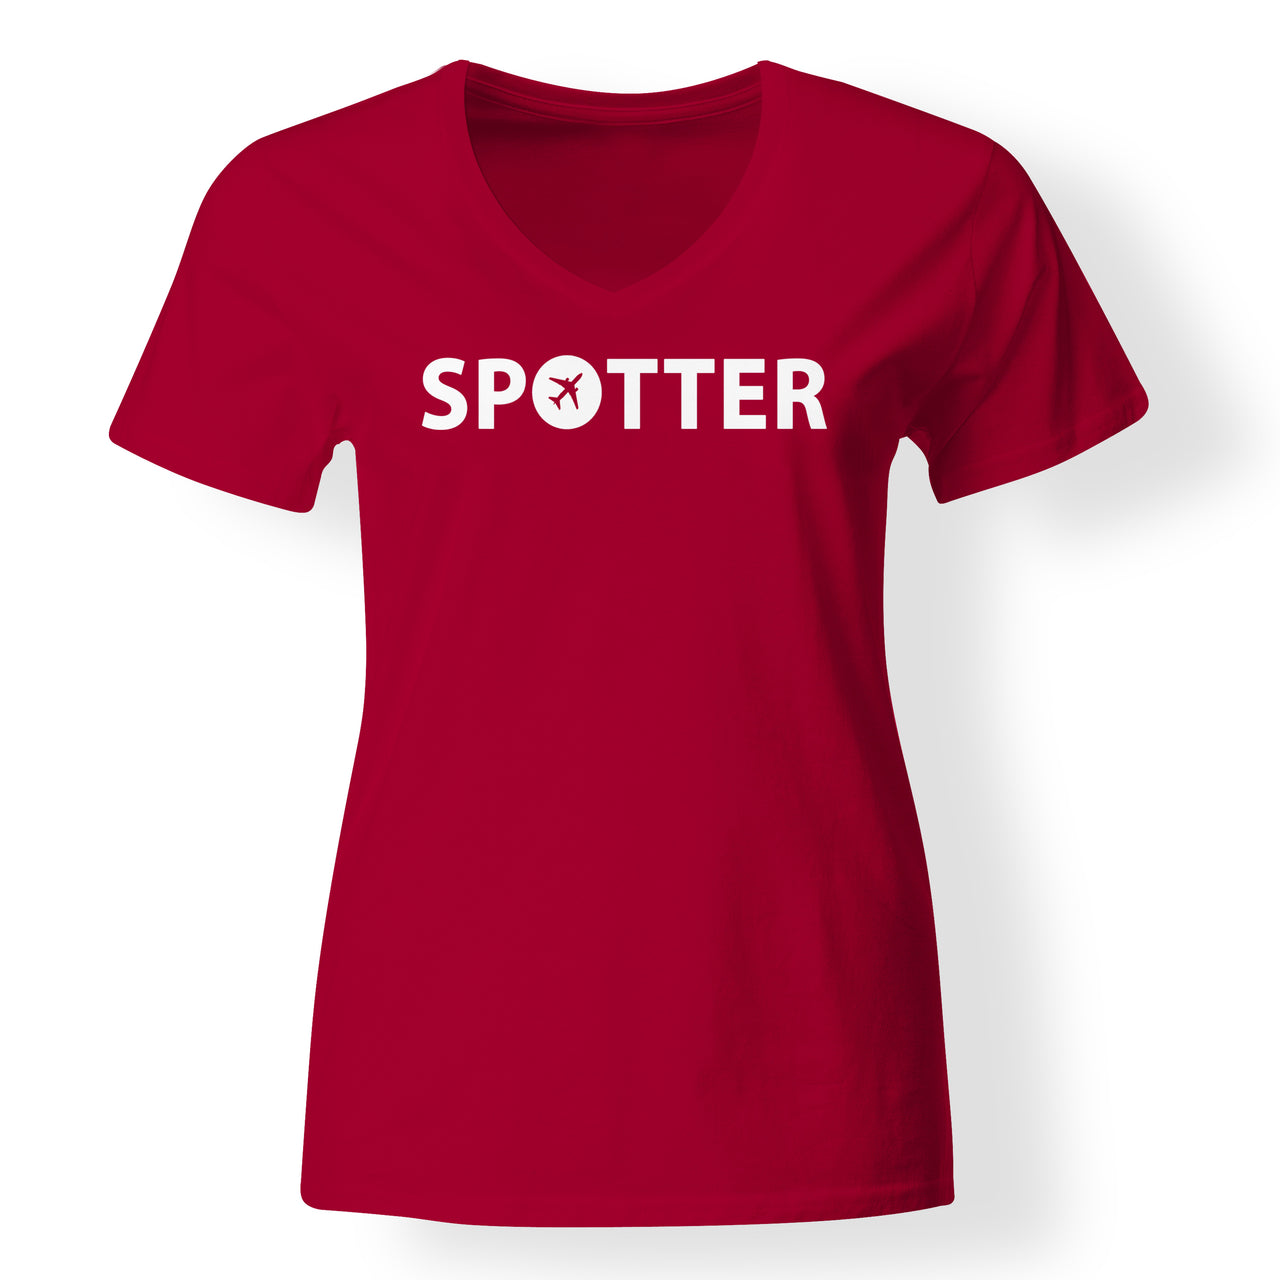 Spotter Designed V-Neck T-Shirts